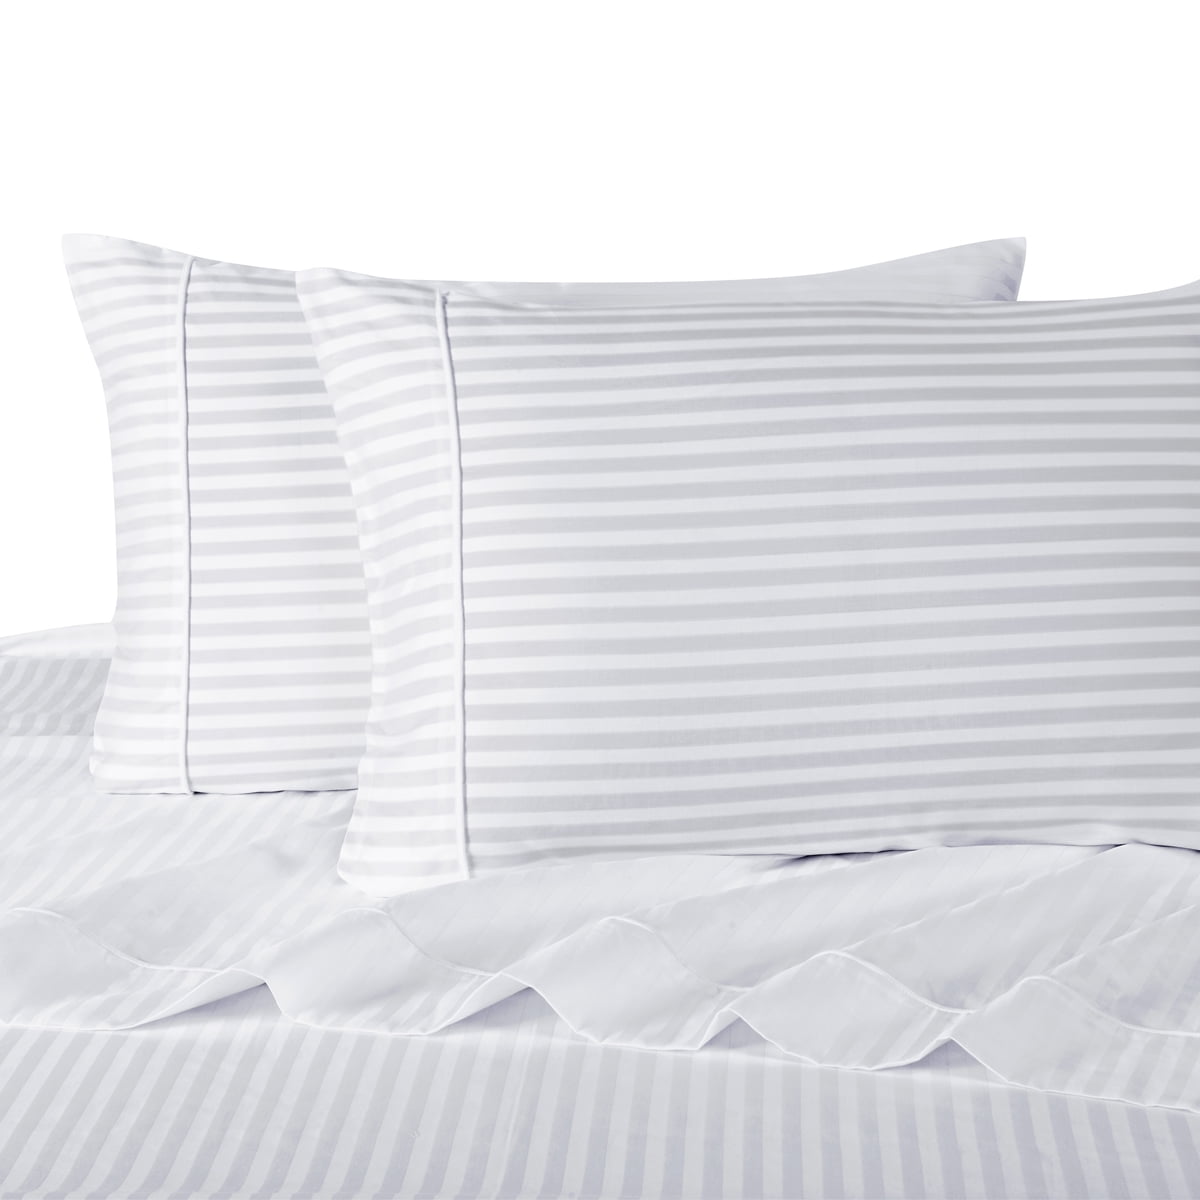 ZYLASTORE White Hotel Satin Flat Sheet 100% Cotton Solid Color Stripe Bedspread Bed Sheet,Beige,1 Sheet 160X240Cm